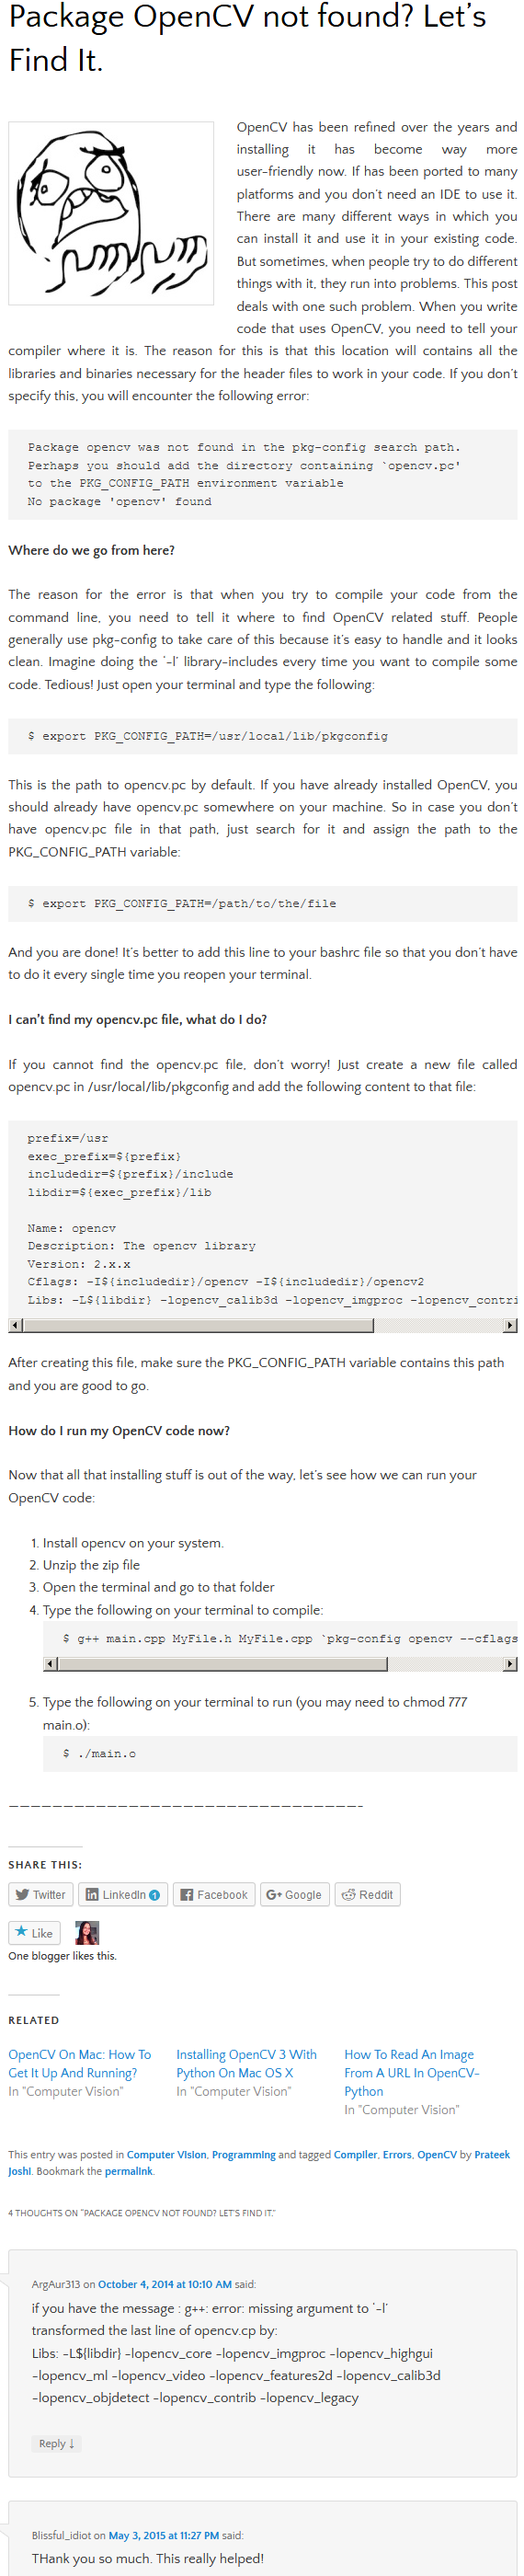 opencv-package 'eigen3' not found的解决